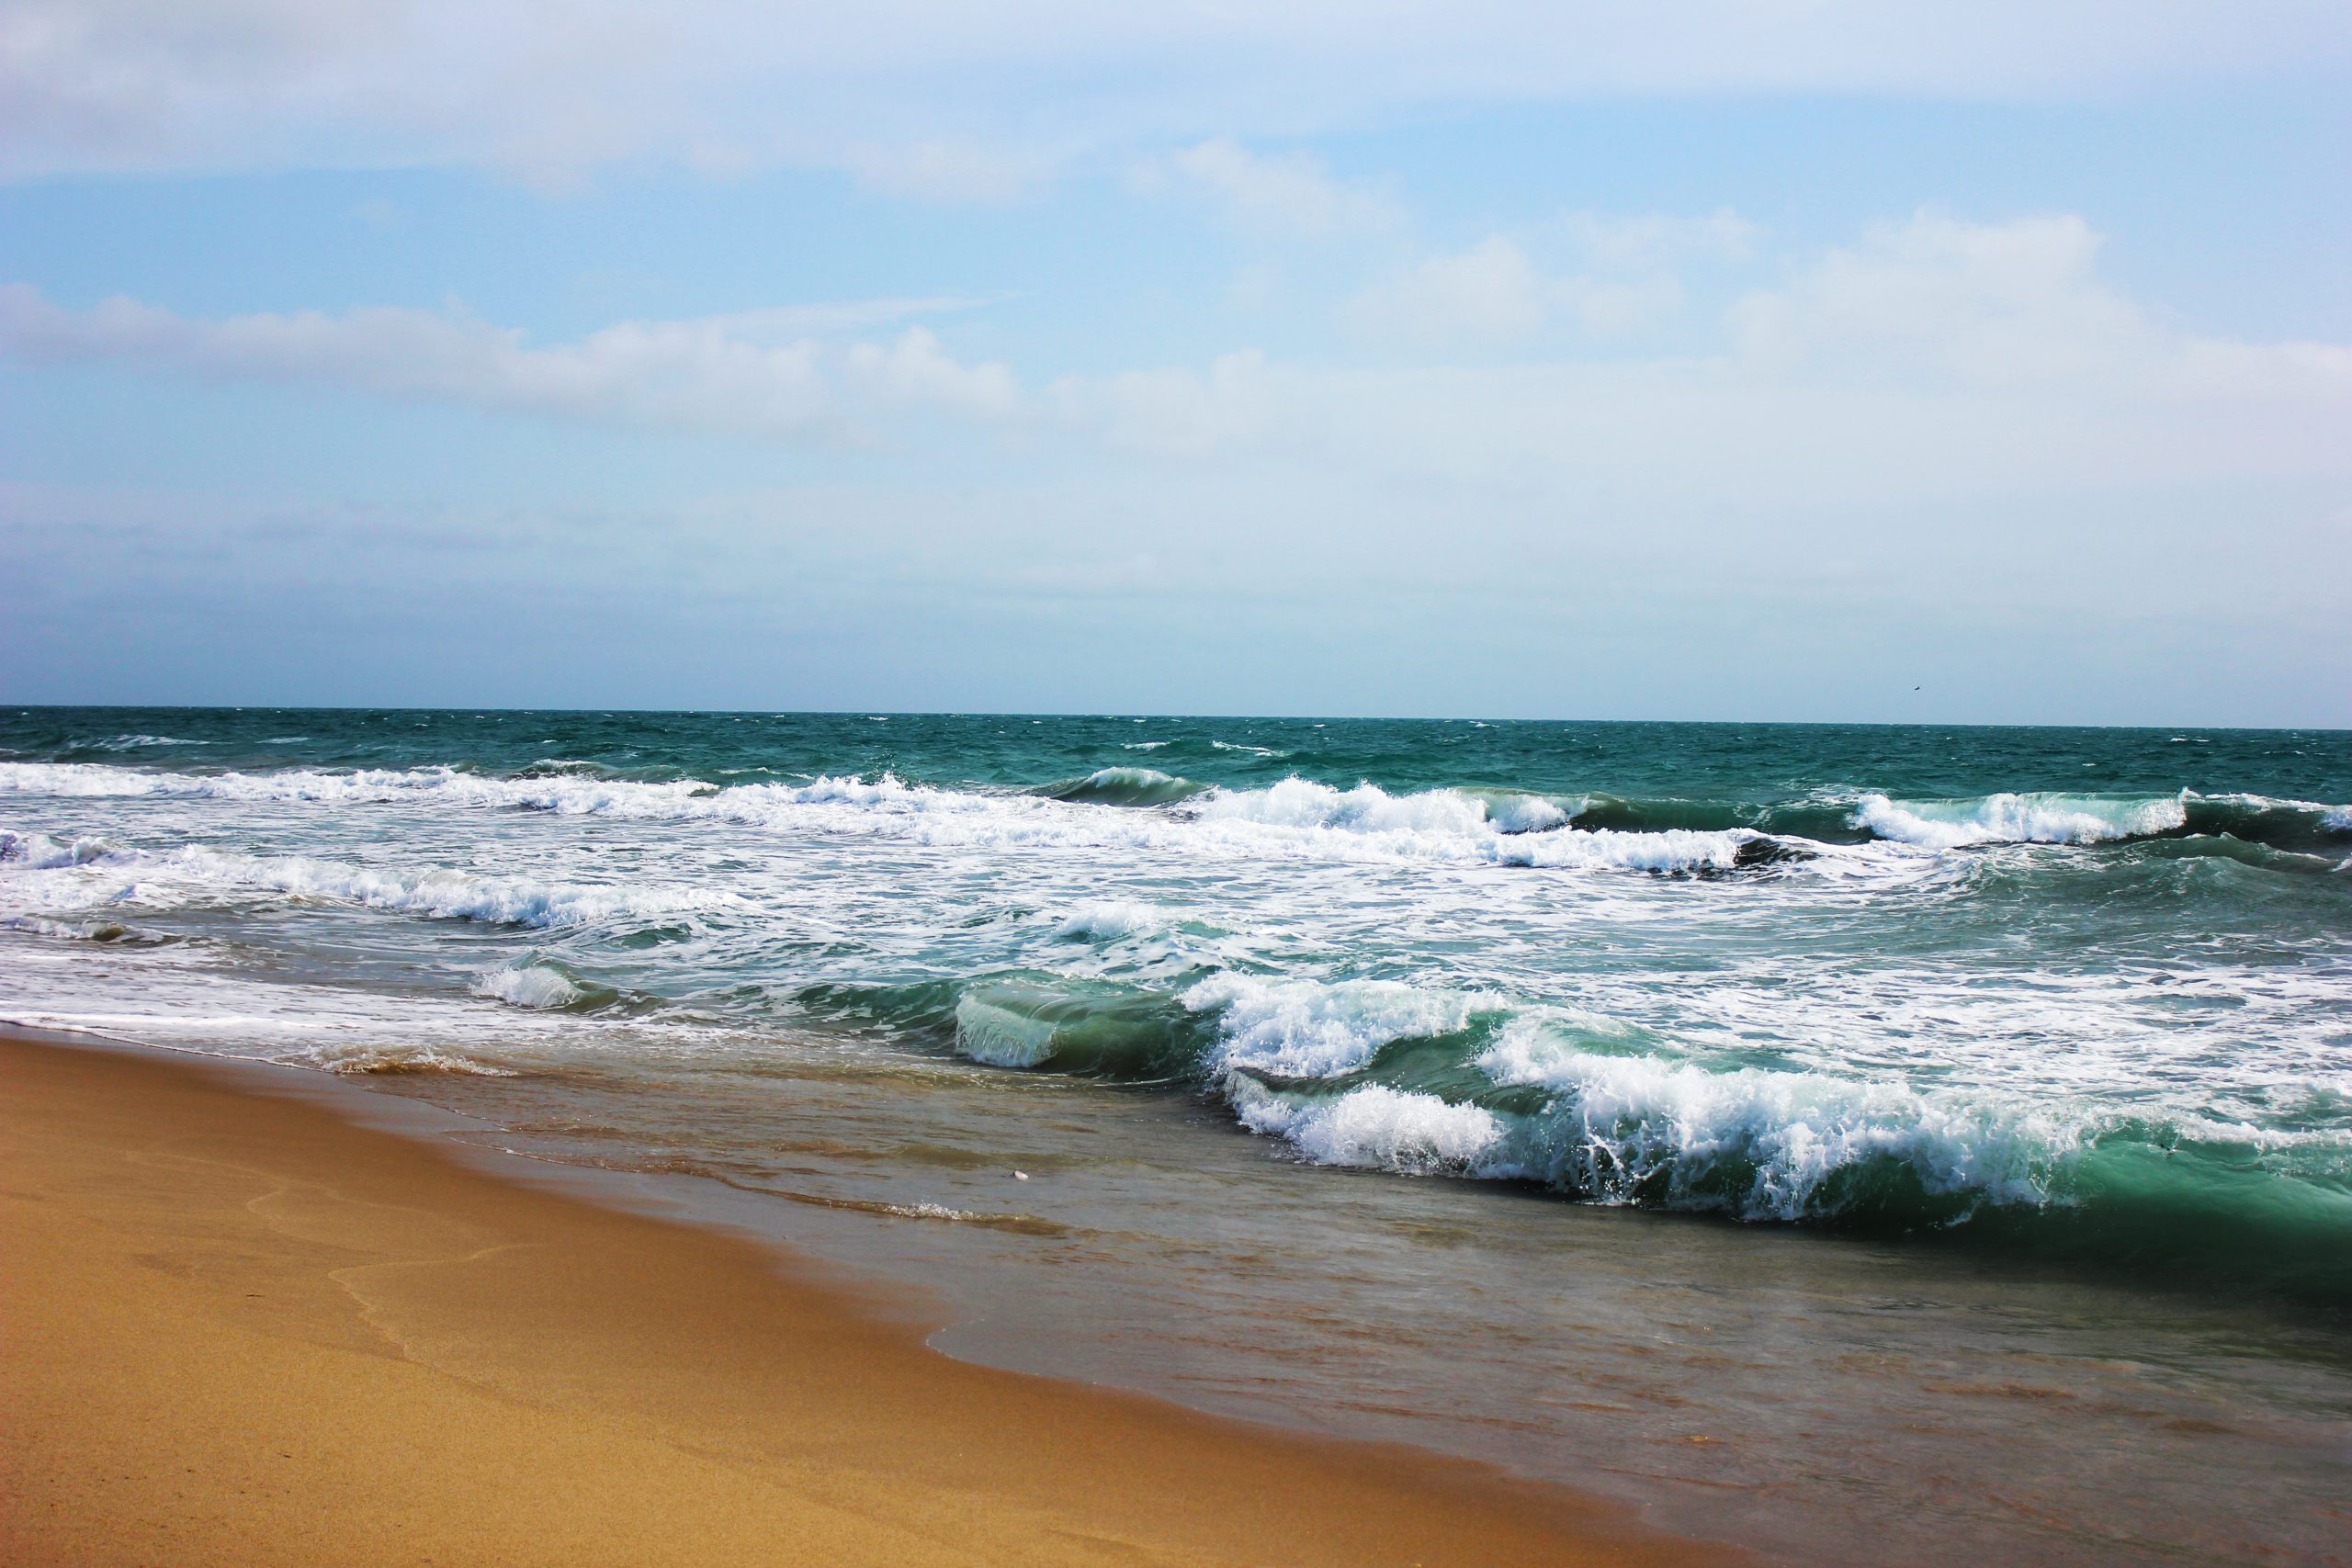 Sea waves reaching the beach